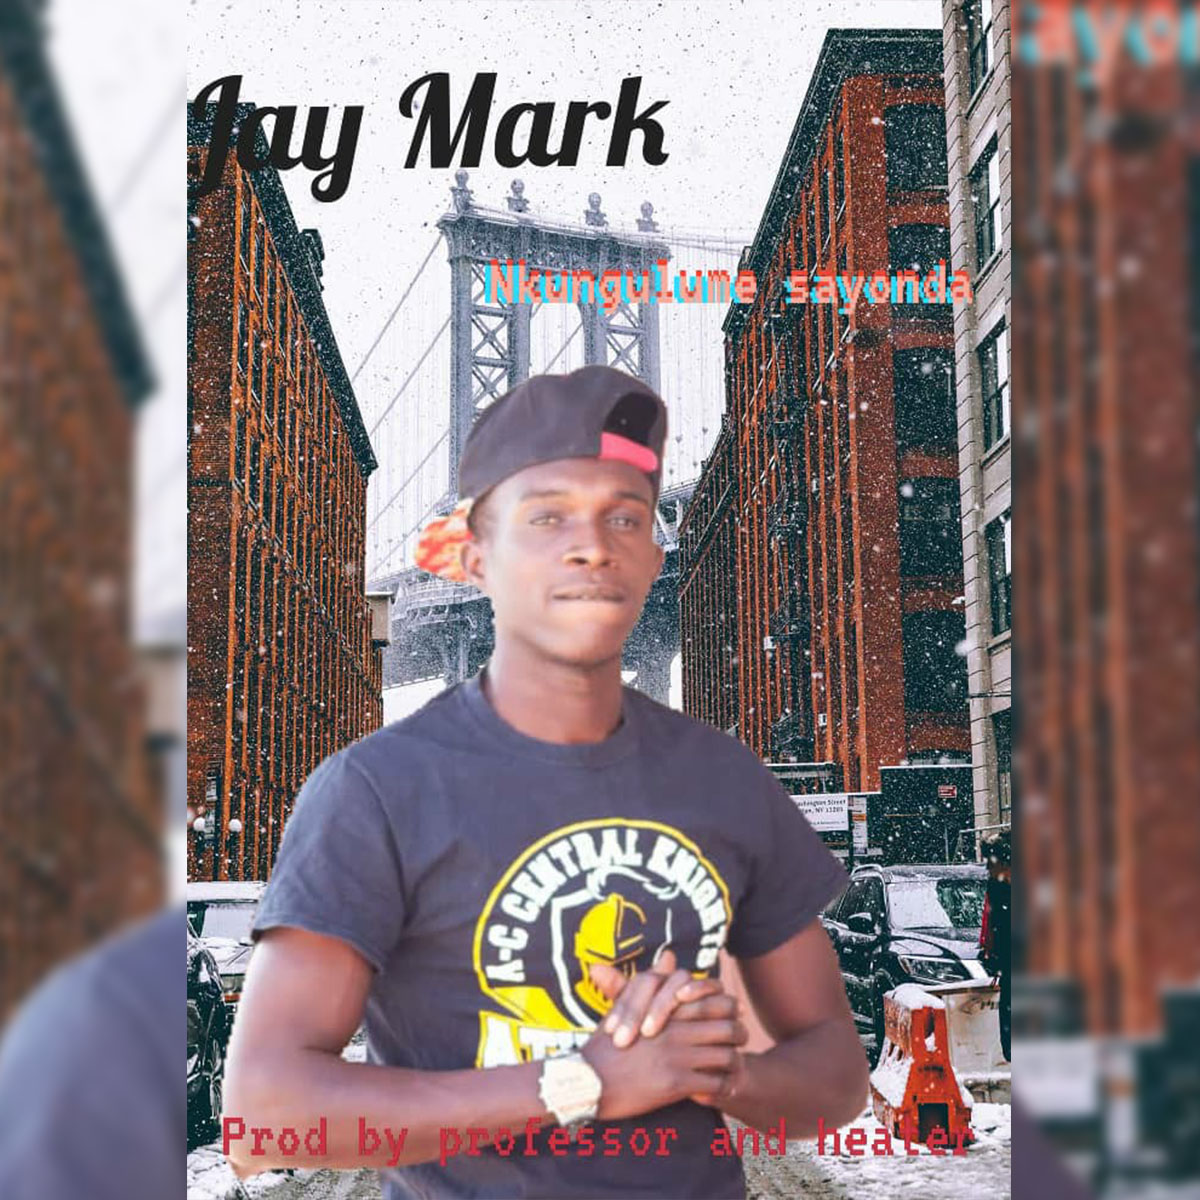 Jay Mark - Nkungulume Sayonda